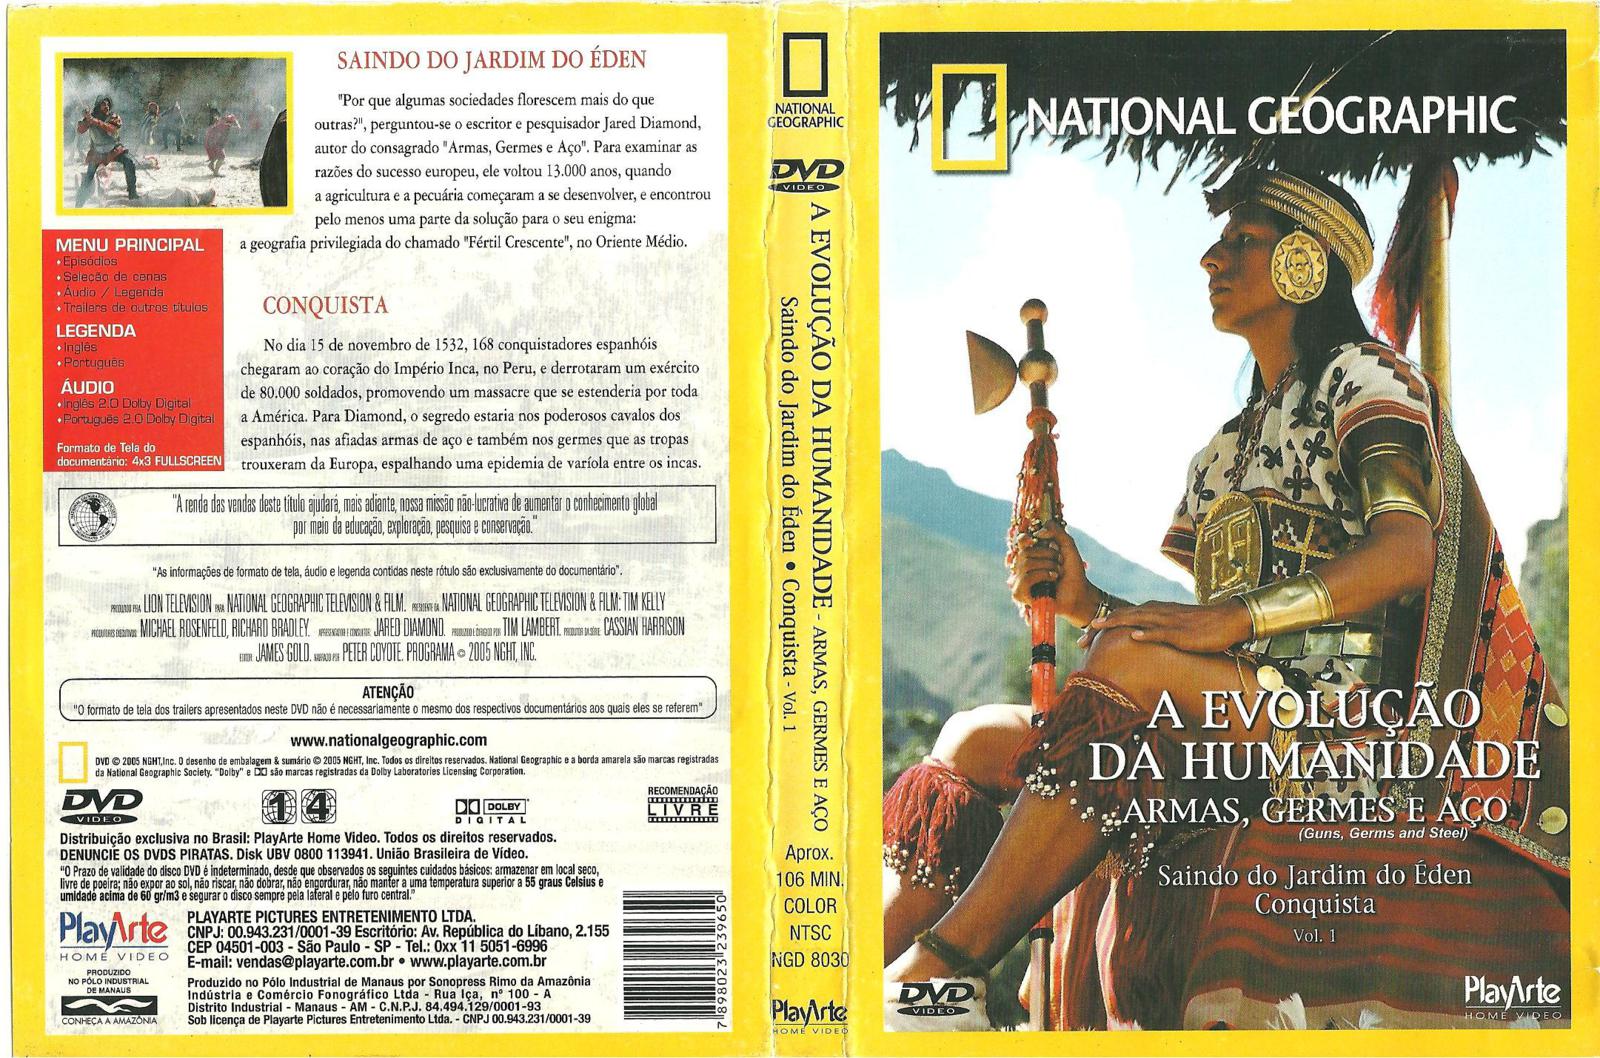 Capa DVD National Geographic A EvoluÃ§Ã£o Da Humanidade Vol 1